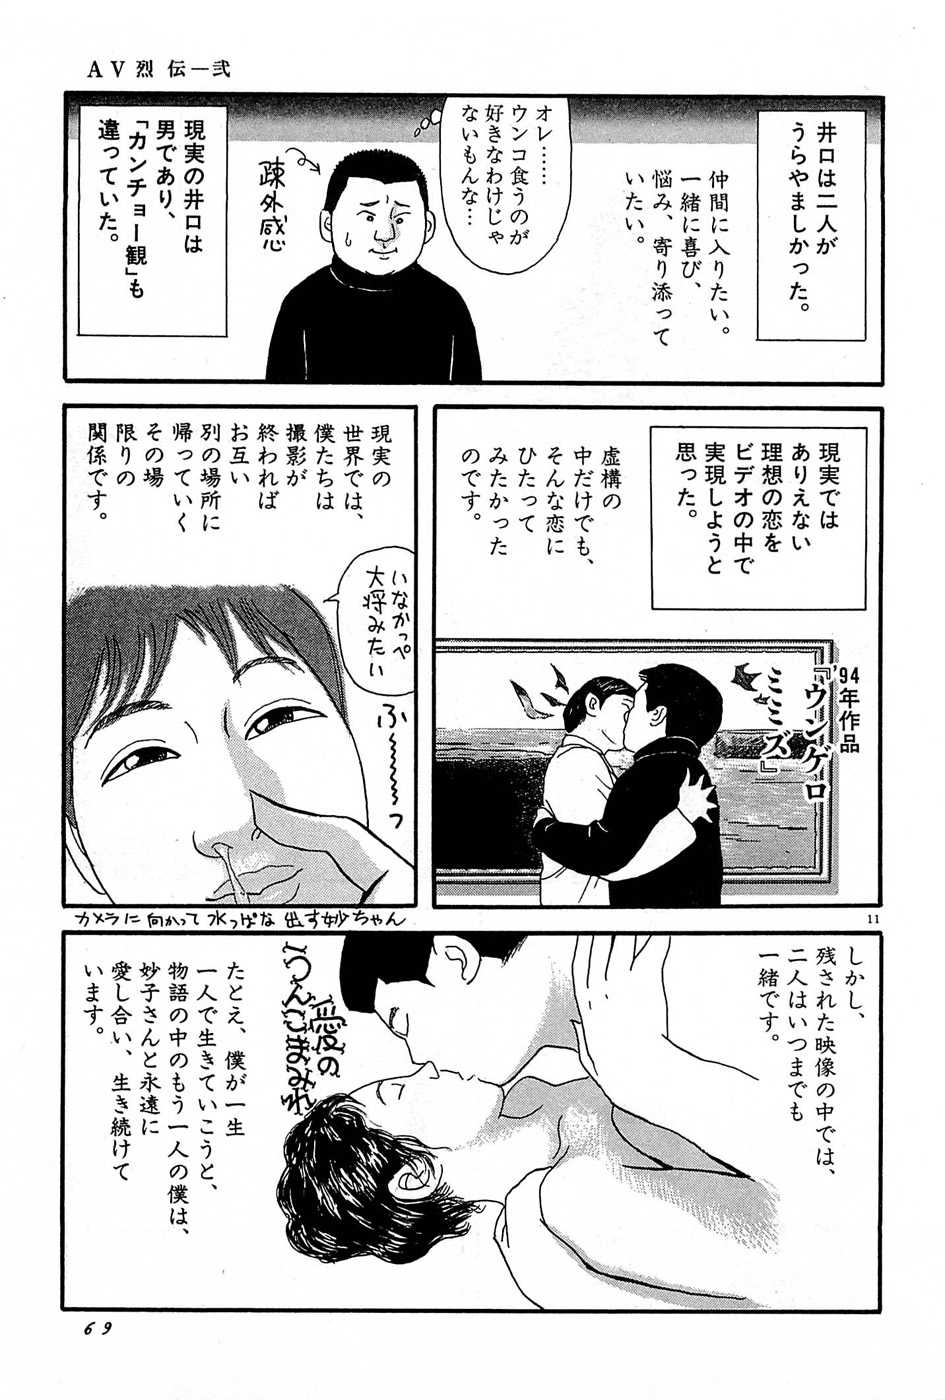 [Iura Hideo] AV Retsuden Vol.2 [井浦秀夫] AV烈伝 第2巻